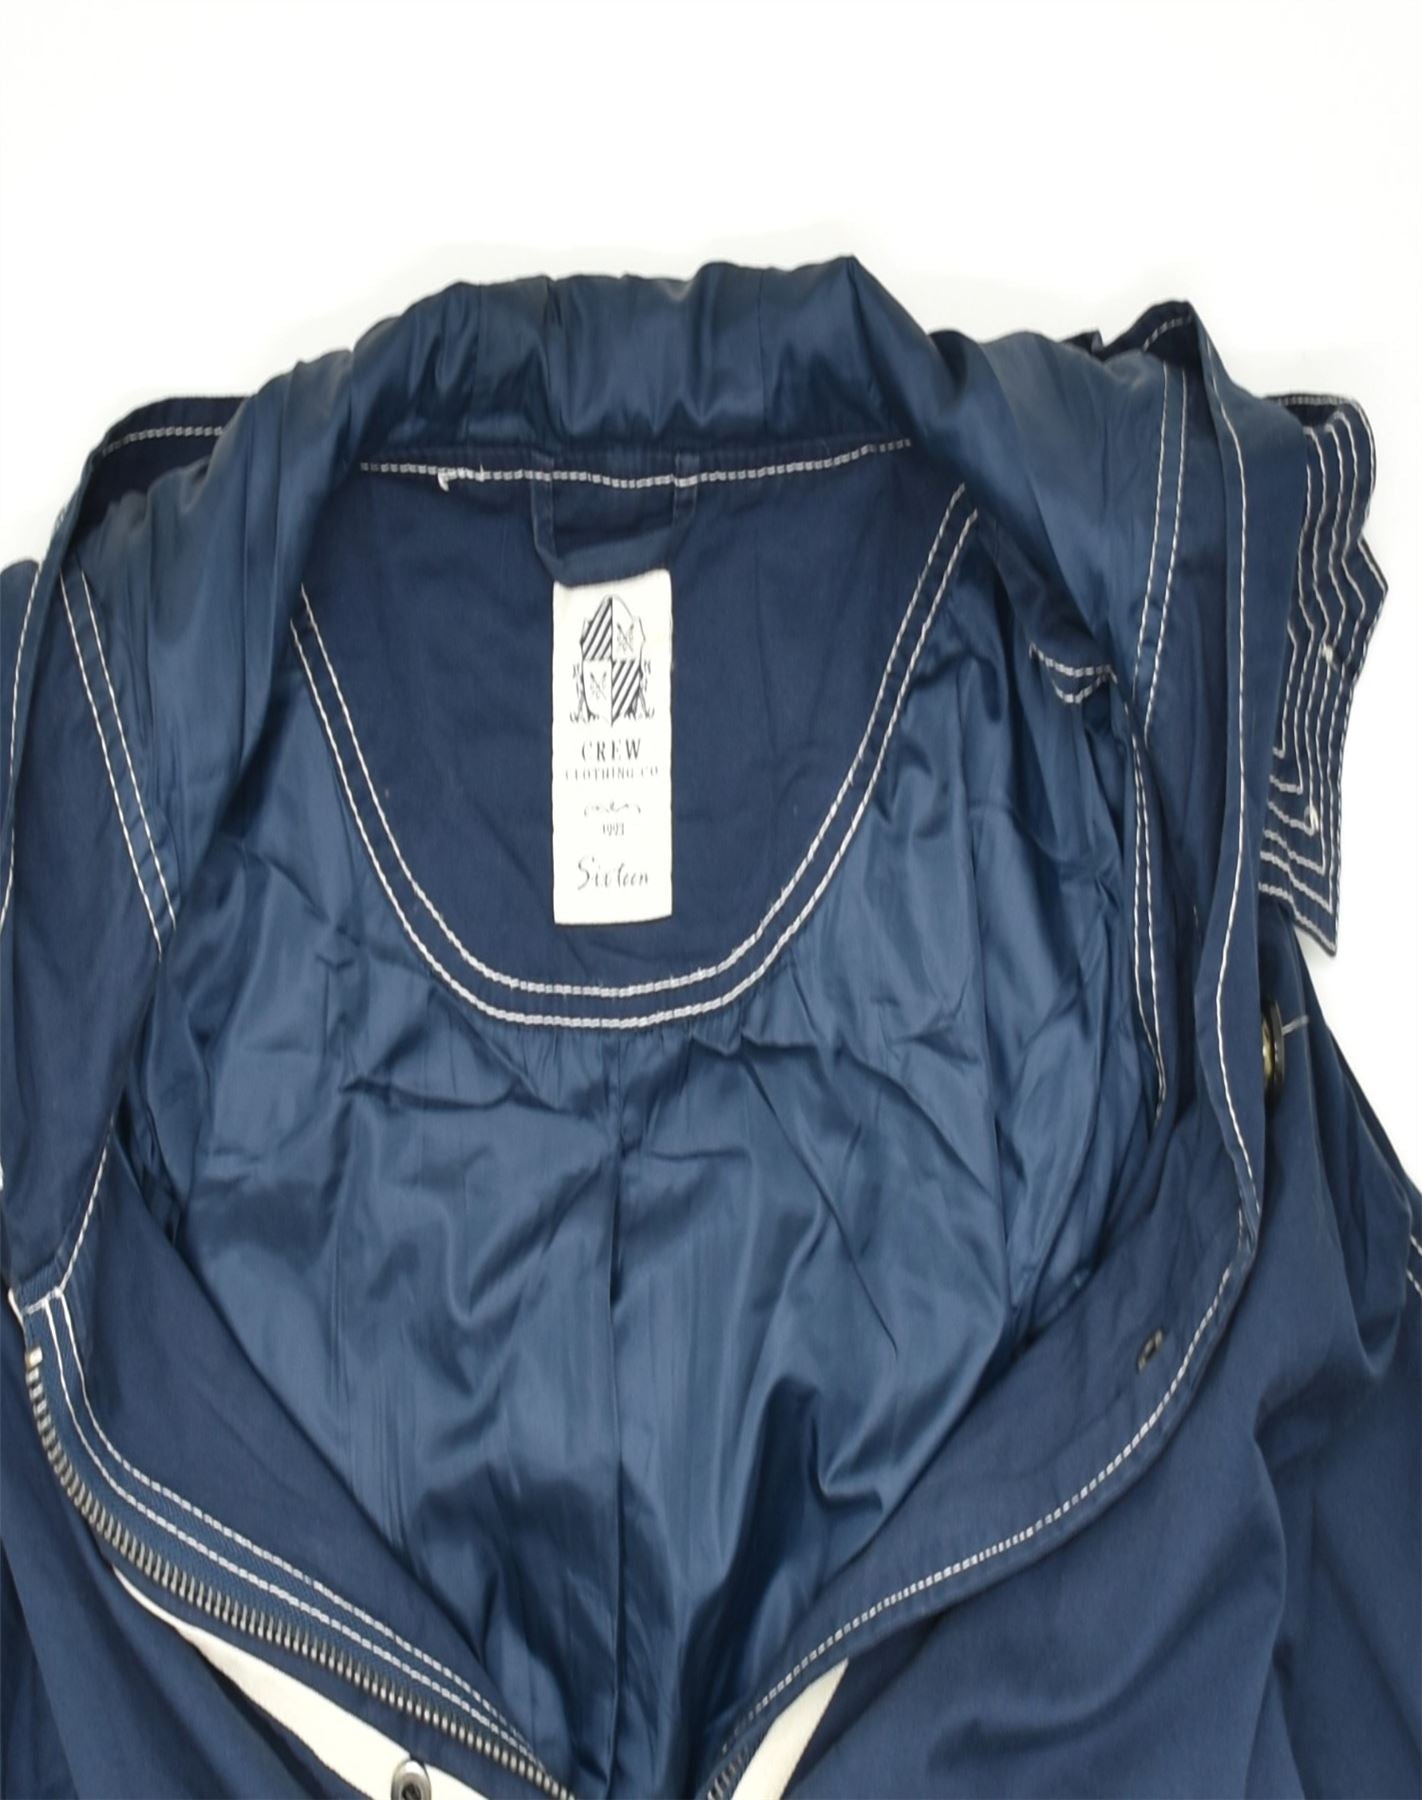 CREW CLOTHING Womens Hooded Rain Jacket UK 16 Large Blue Cotton